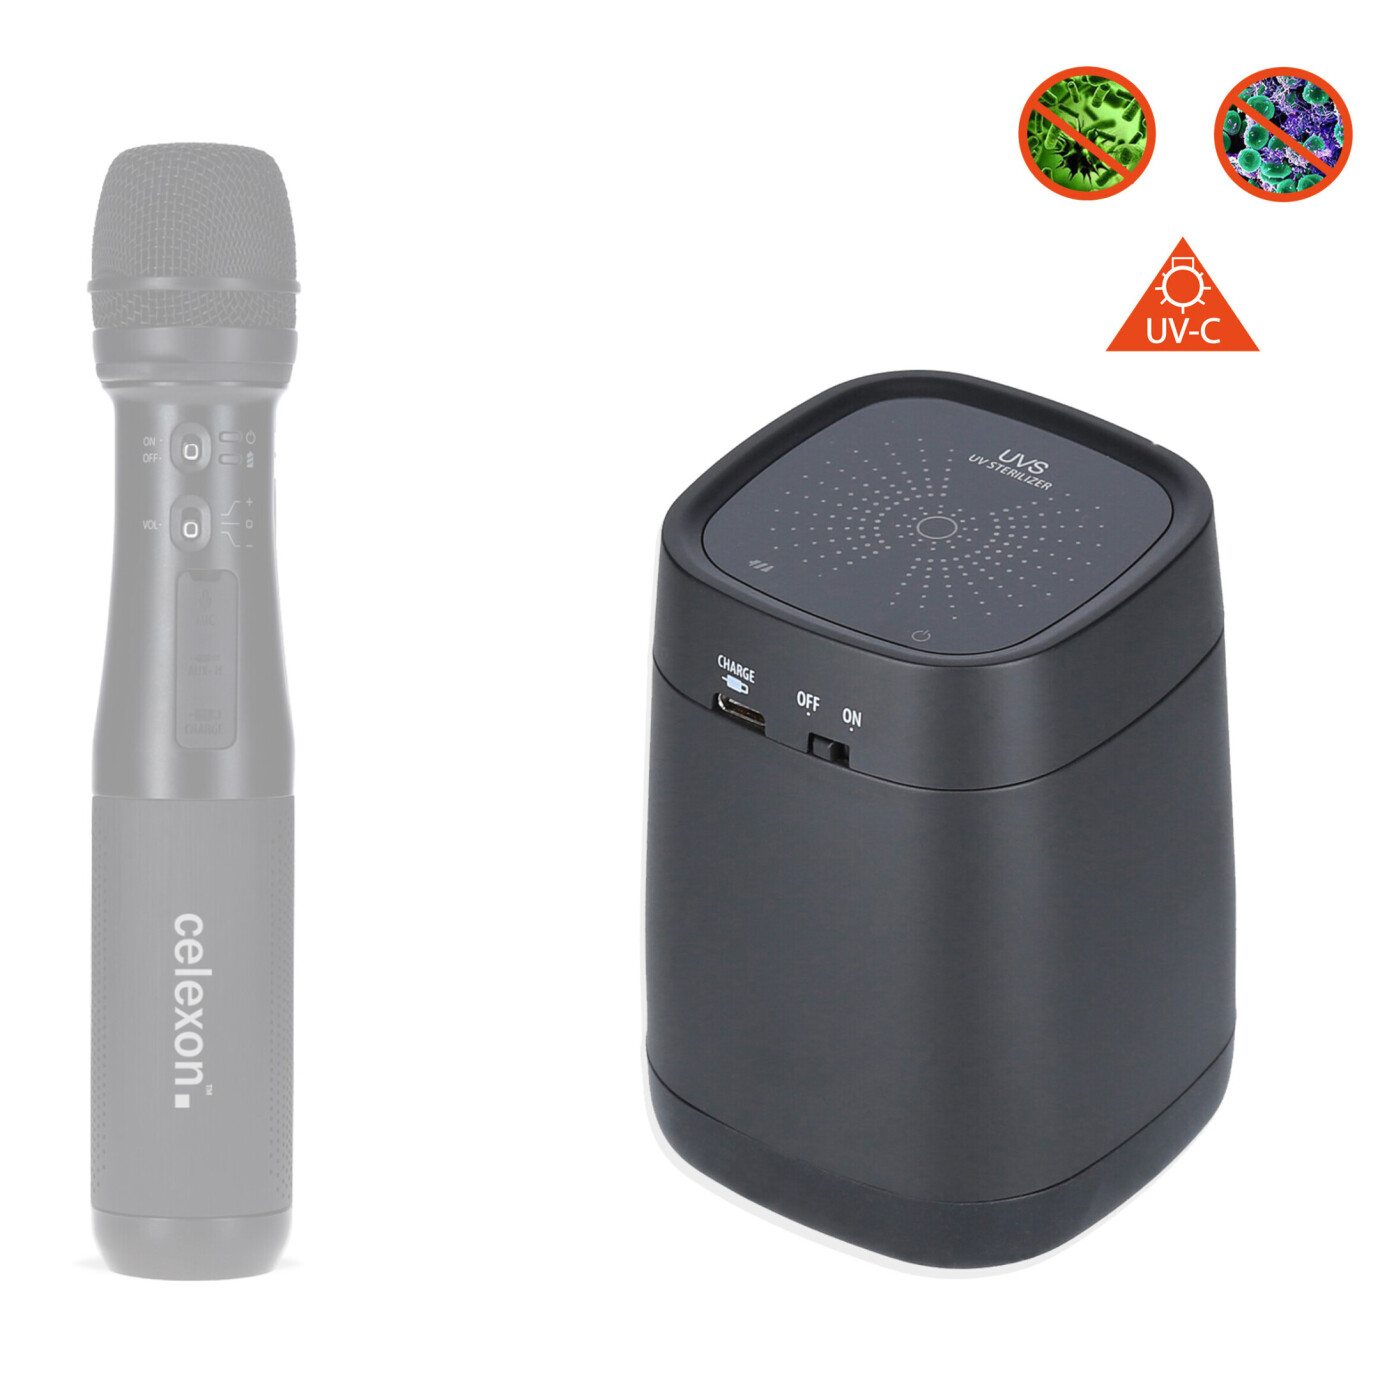 Vorschau: celexon Microfone UV Sterilizer Professional - sichere und zuverlässige Mikrofon-Reinigung per UV-C